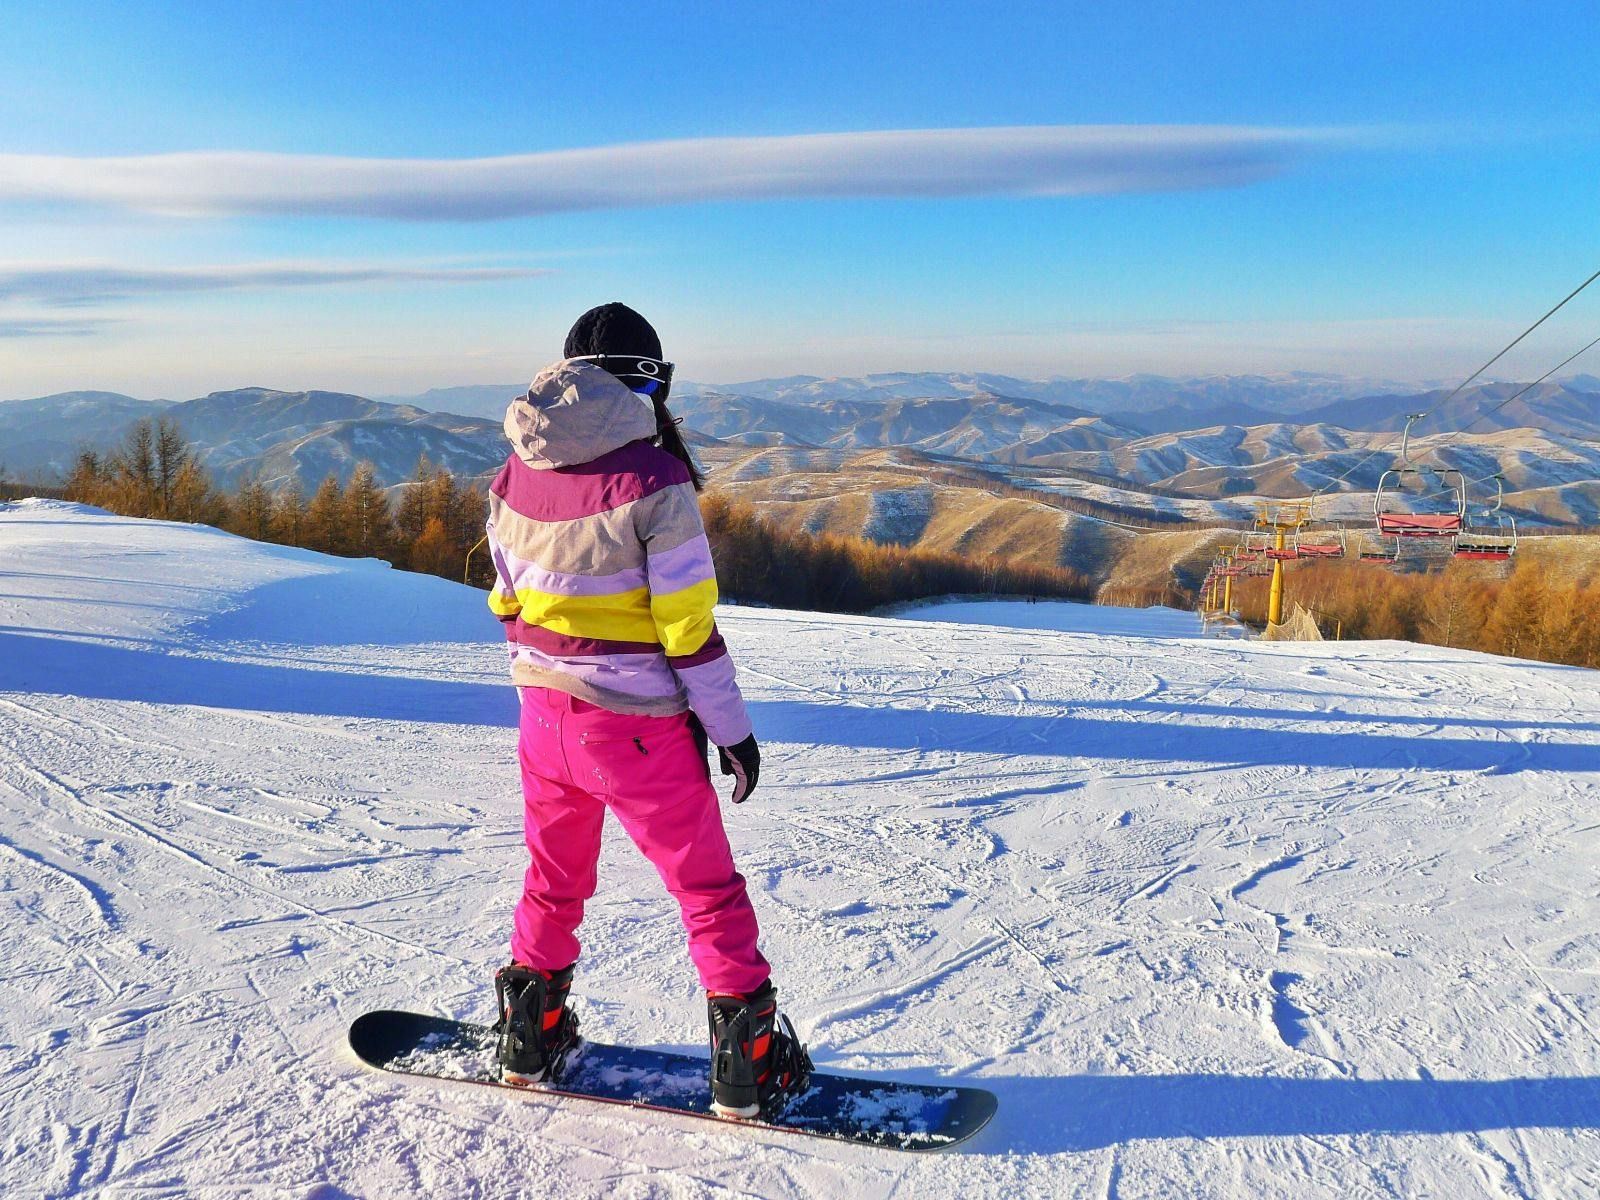 計畫去日本、韓國滑雪嗎？先了解滑雪基礎動作更可以容易上時！